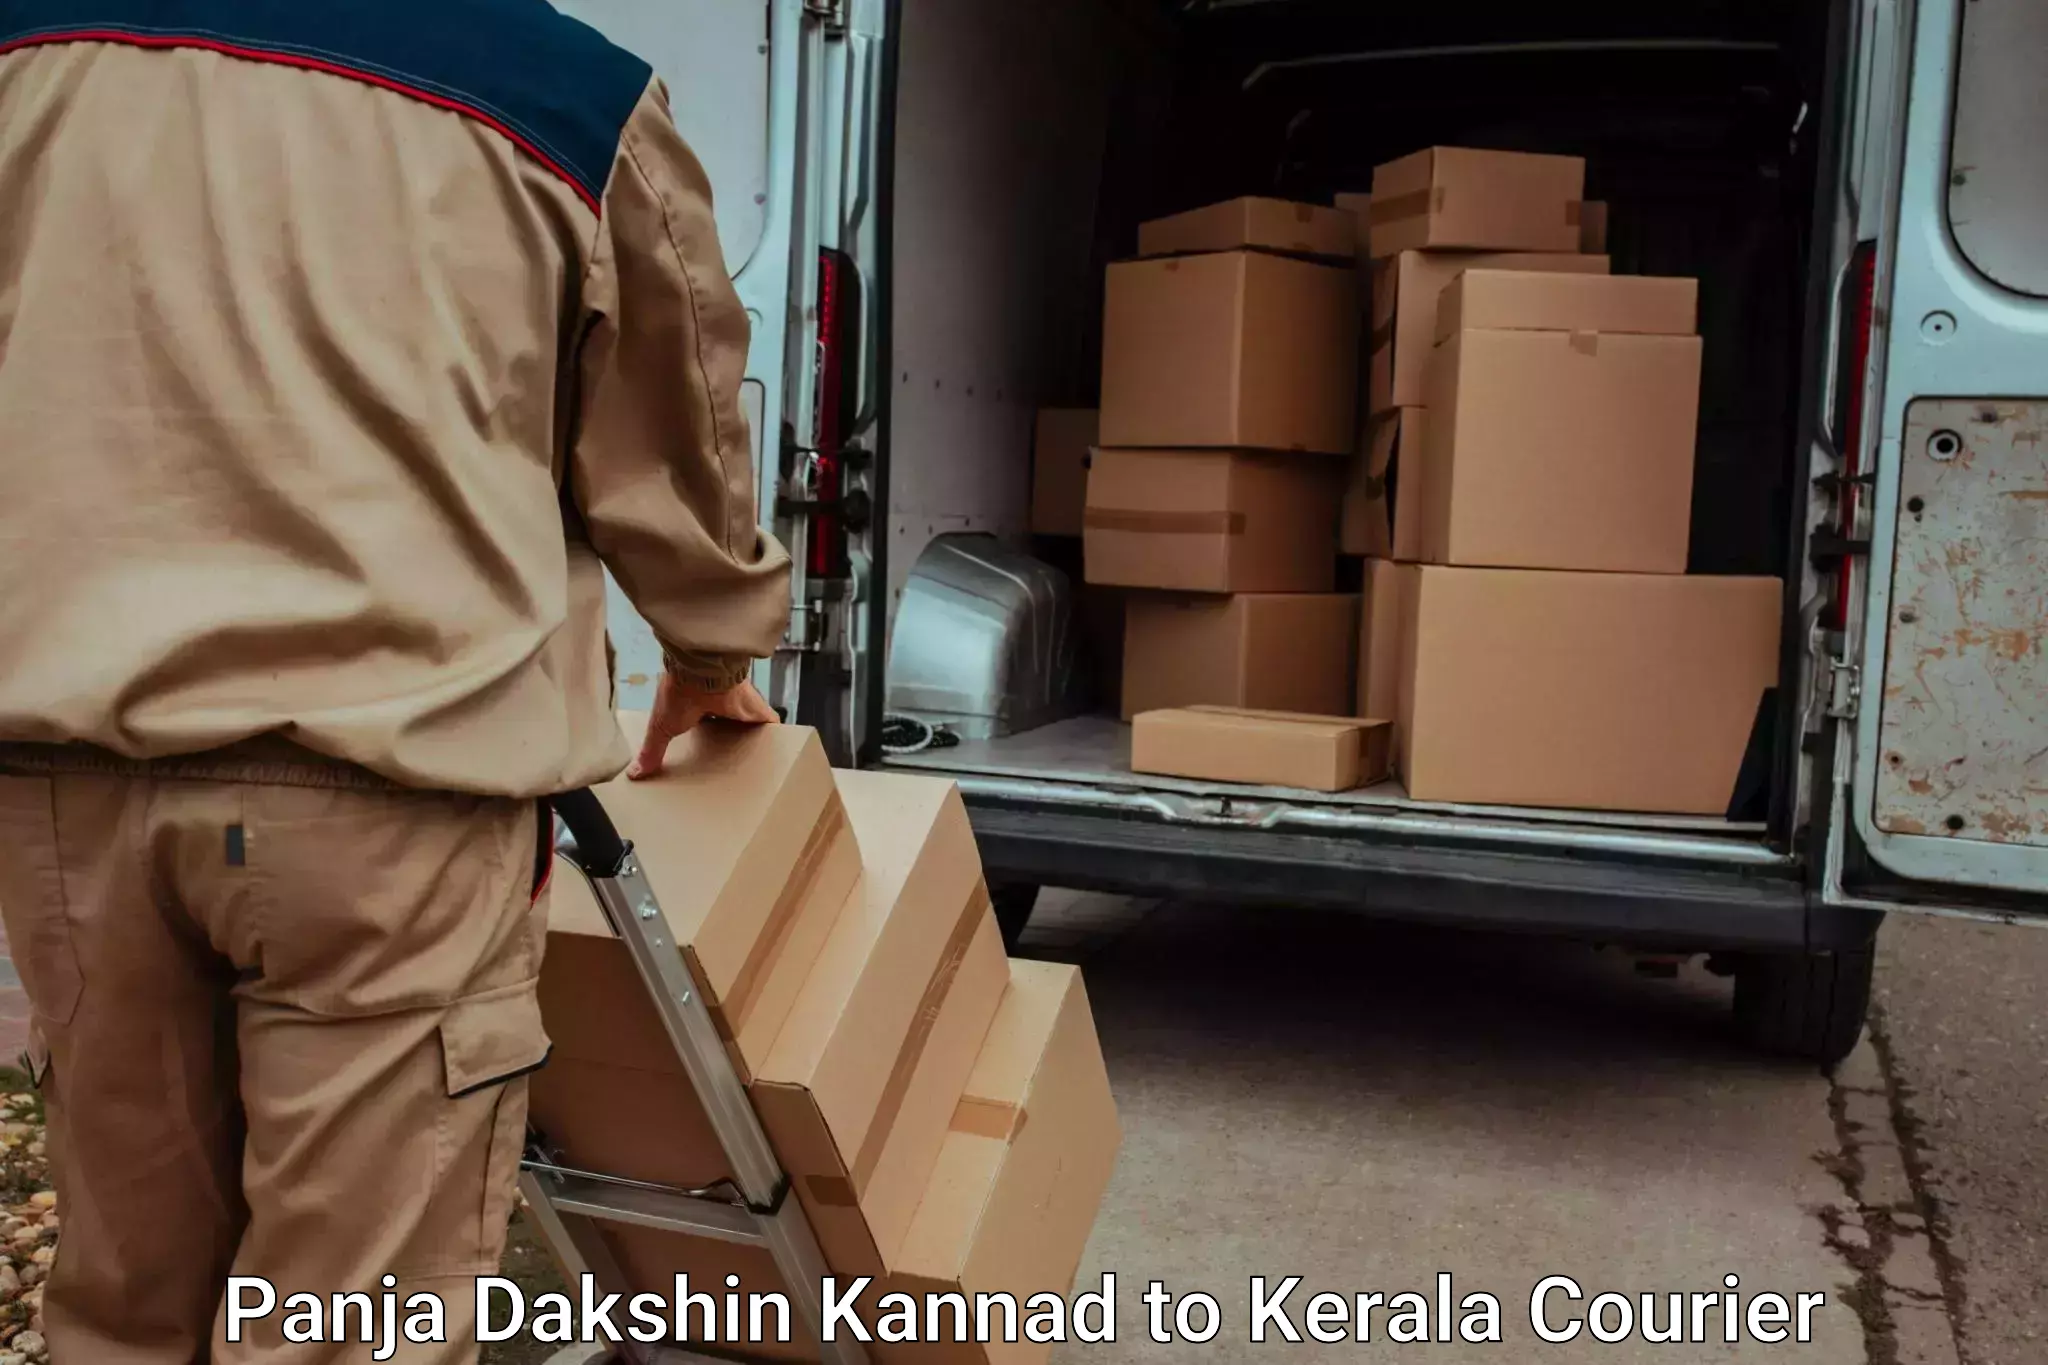 Professional packing services Panja Dakshin Kannad to Palai